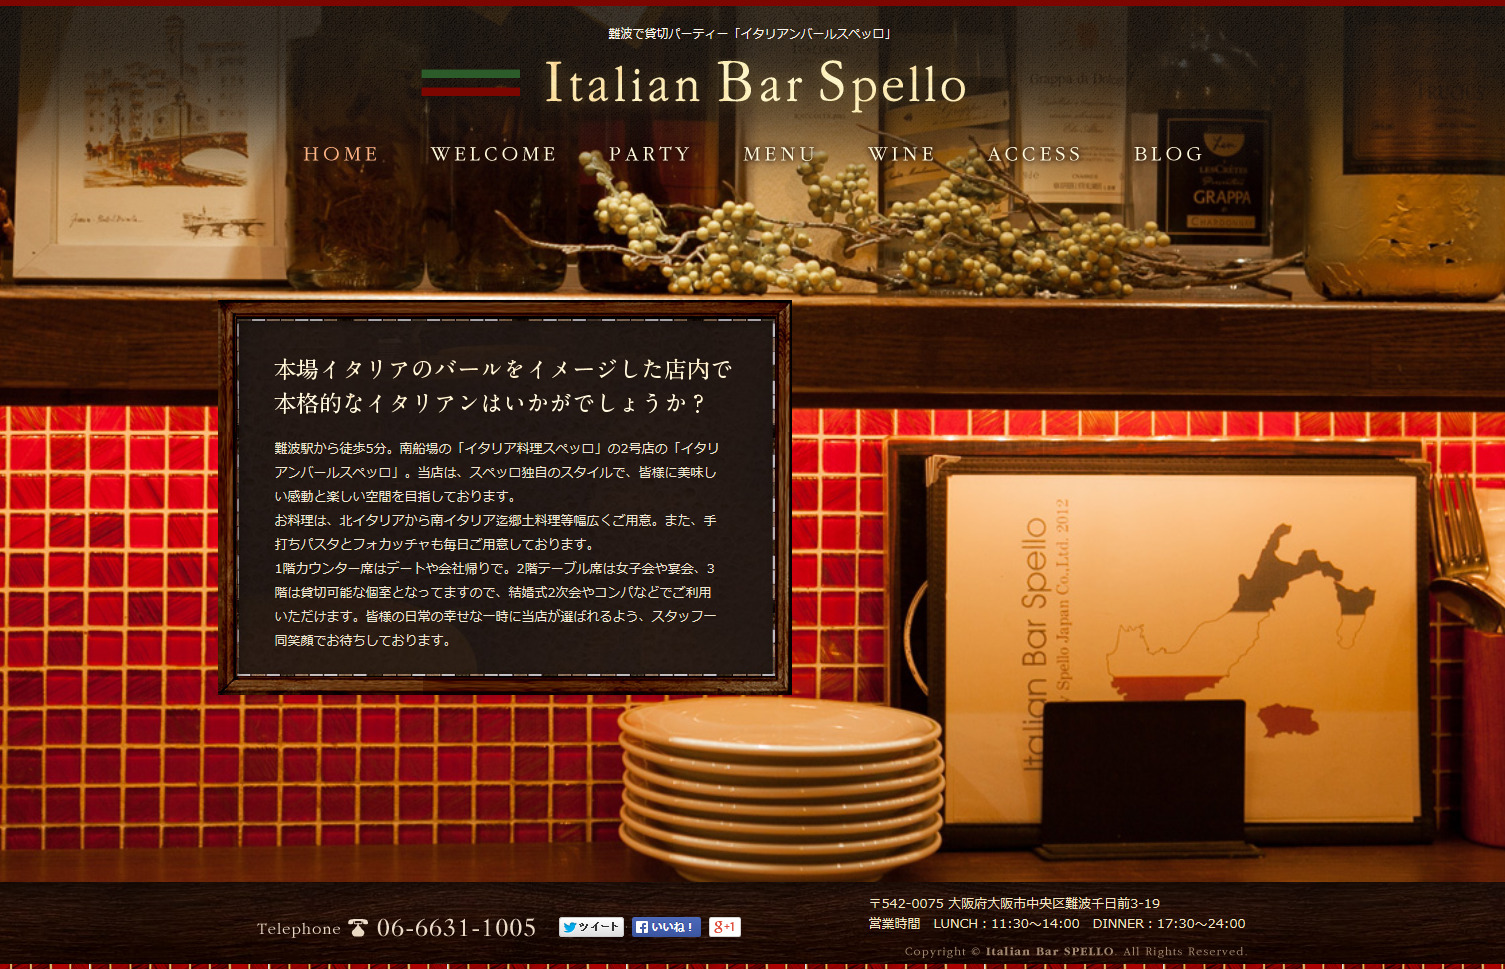 Italian Bar Spello / イタリアンバールスペッロ